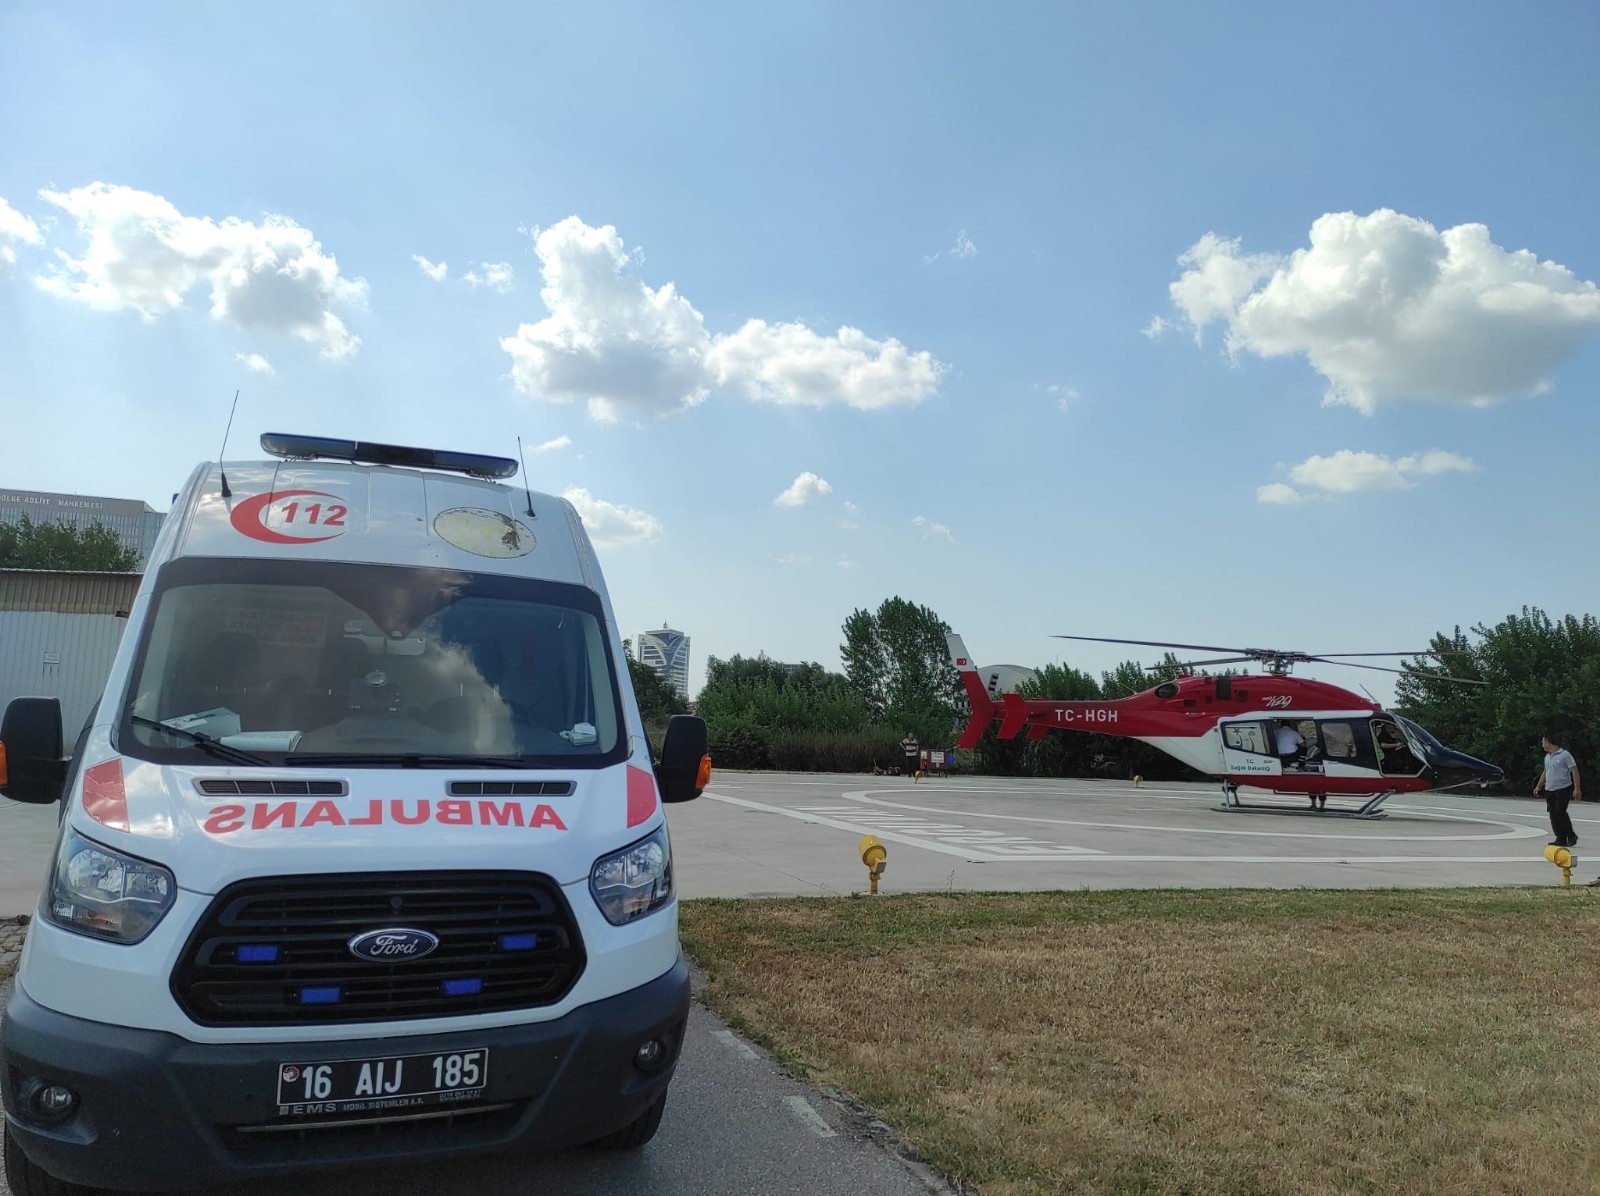 Helikopter ambulans 46 yaşındaki hasta için havalandı